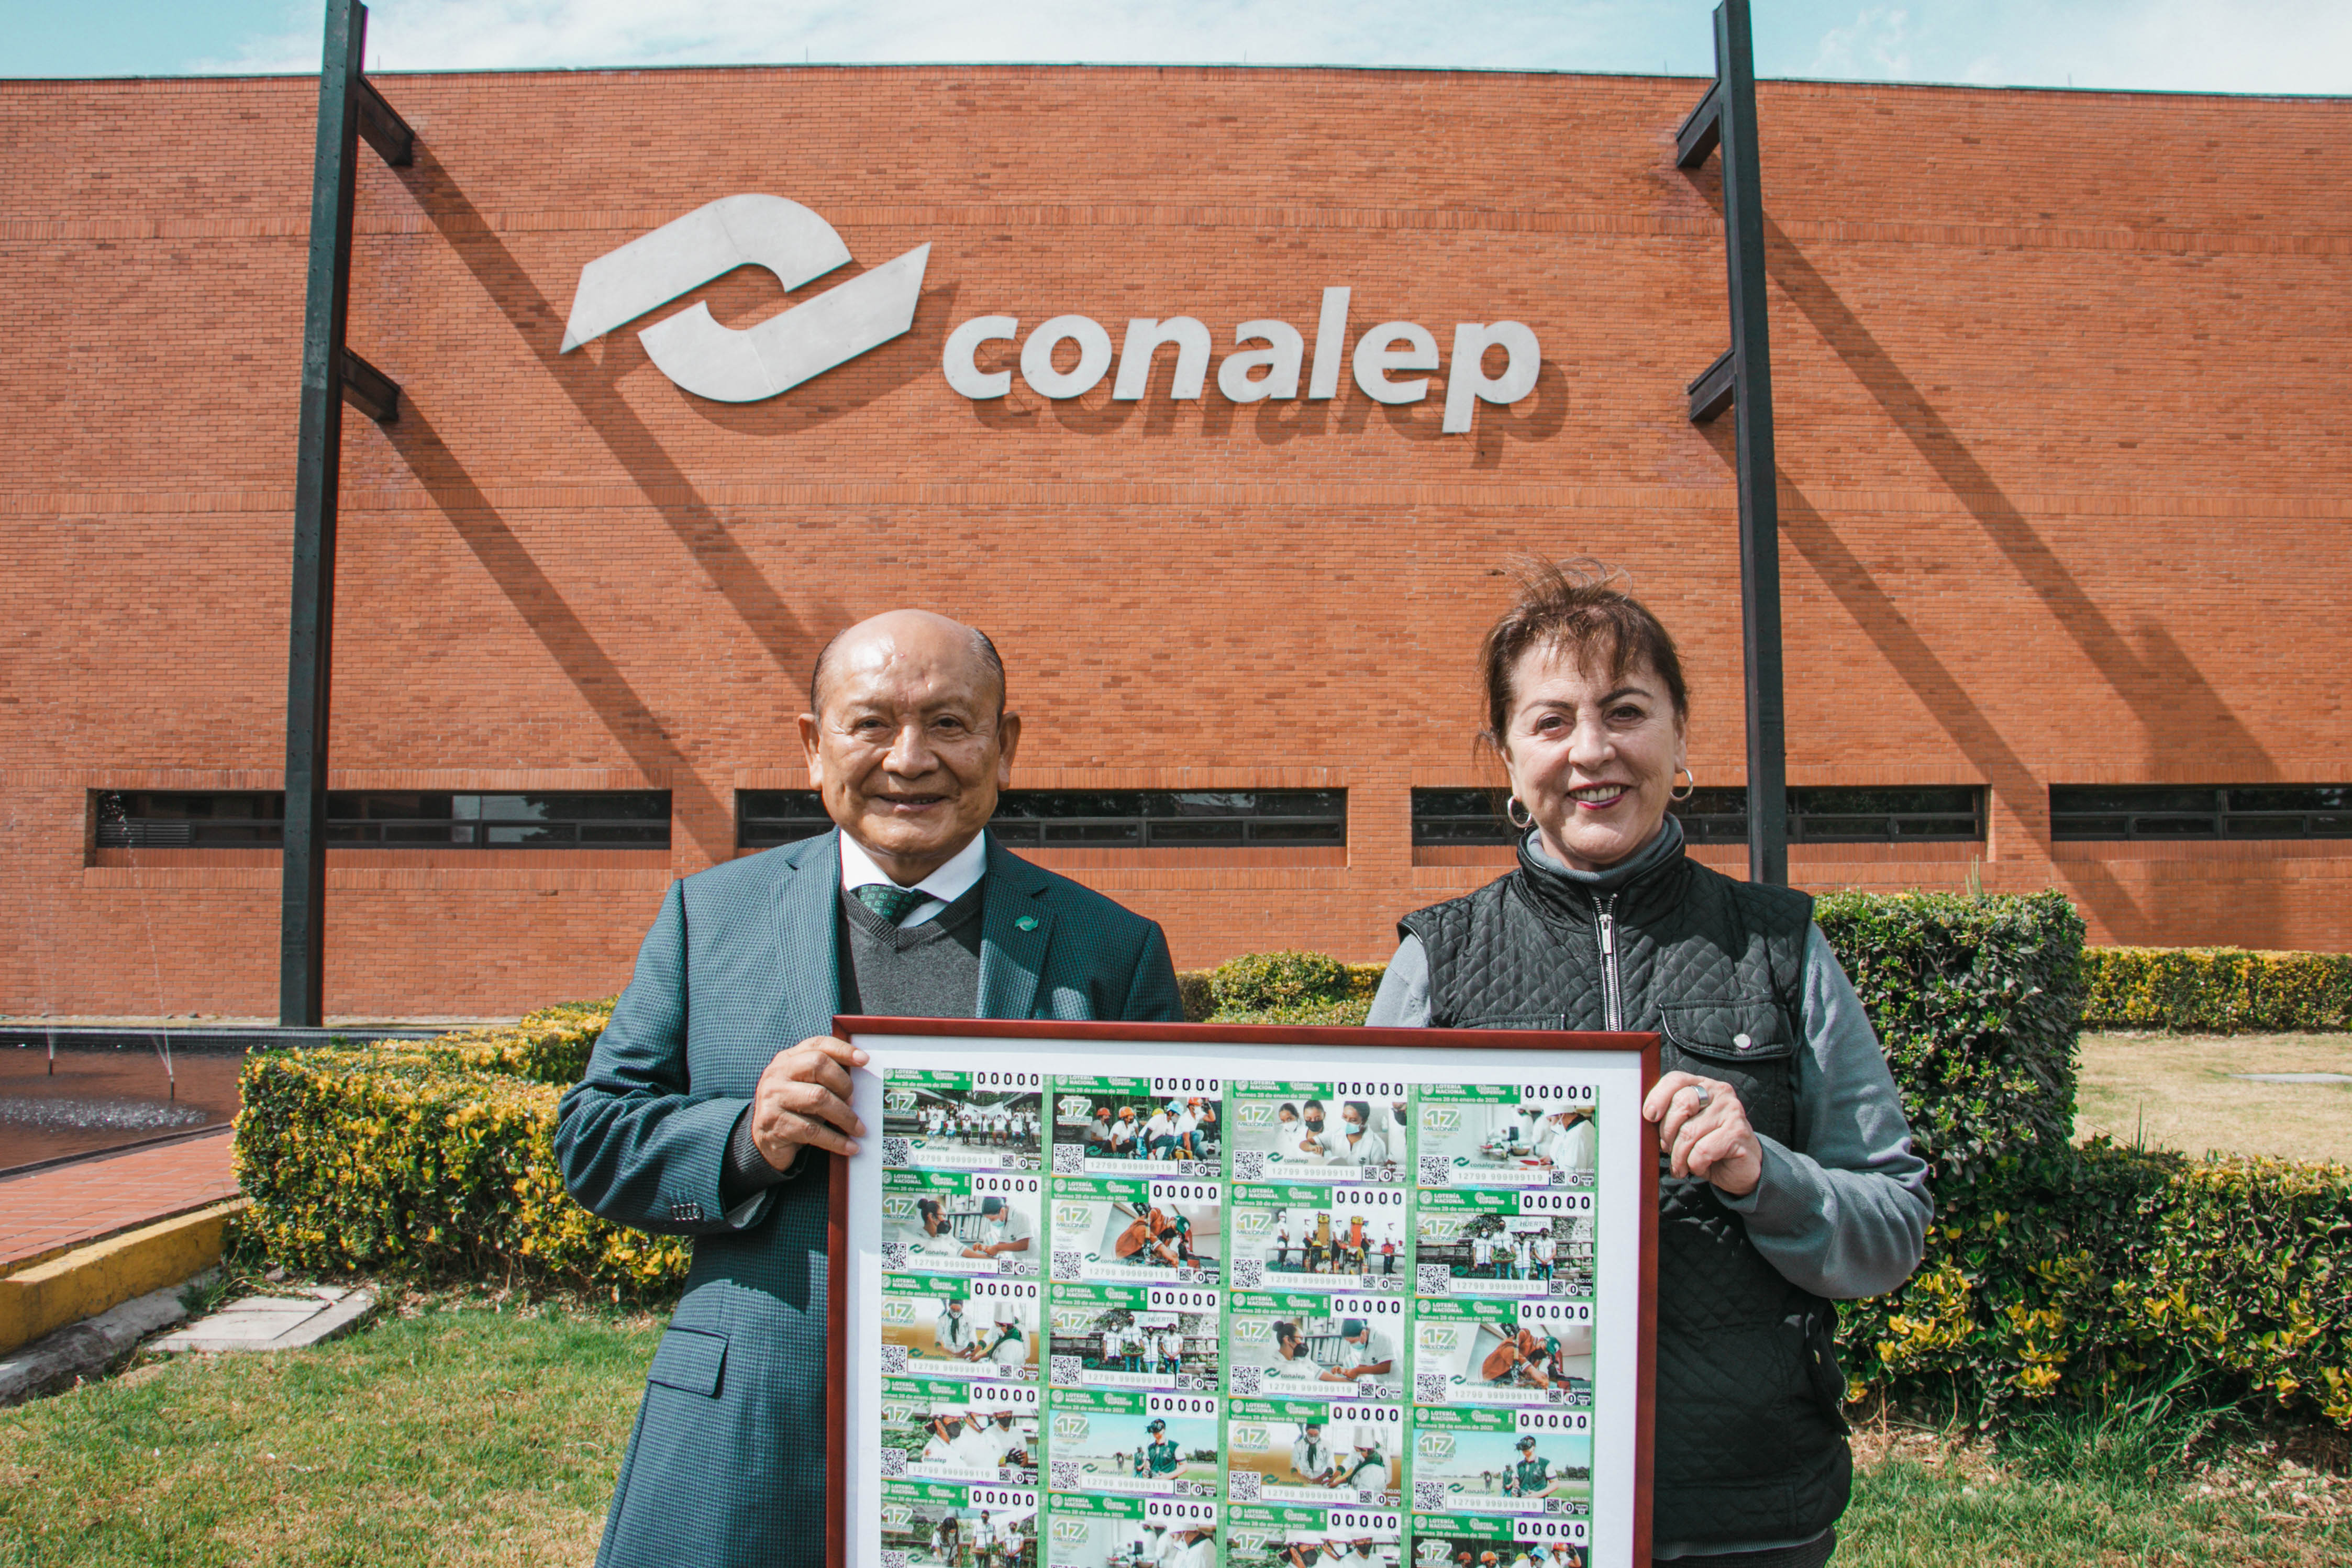  CONALEP y la Lotería Nacional develaron billete conmemorativo con motivo del 43 Aniversario de la institución.